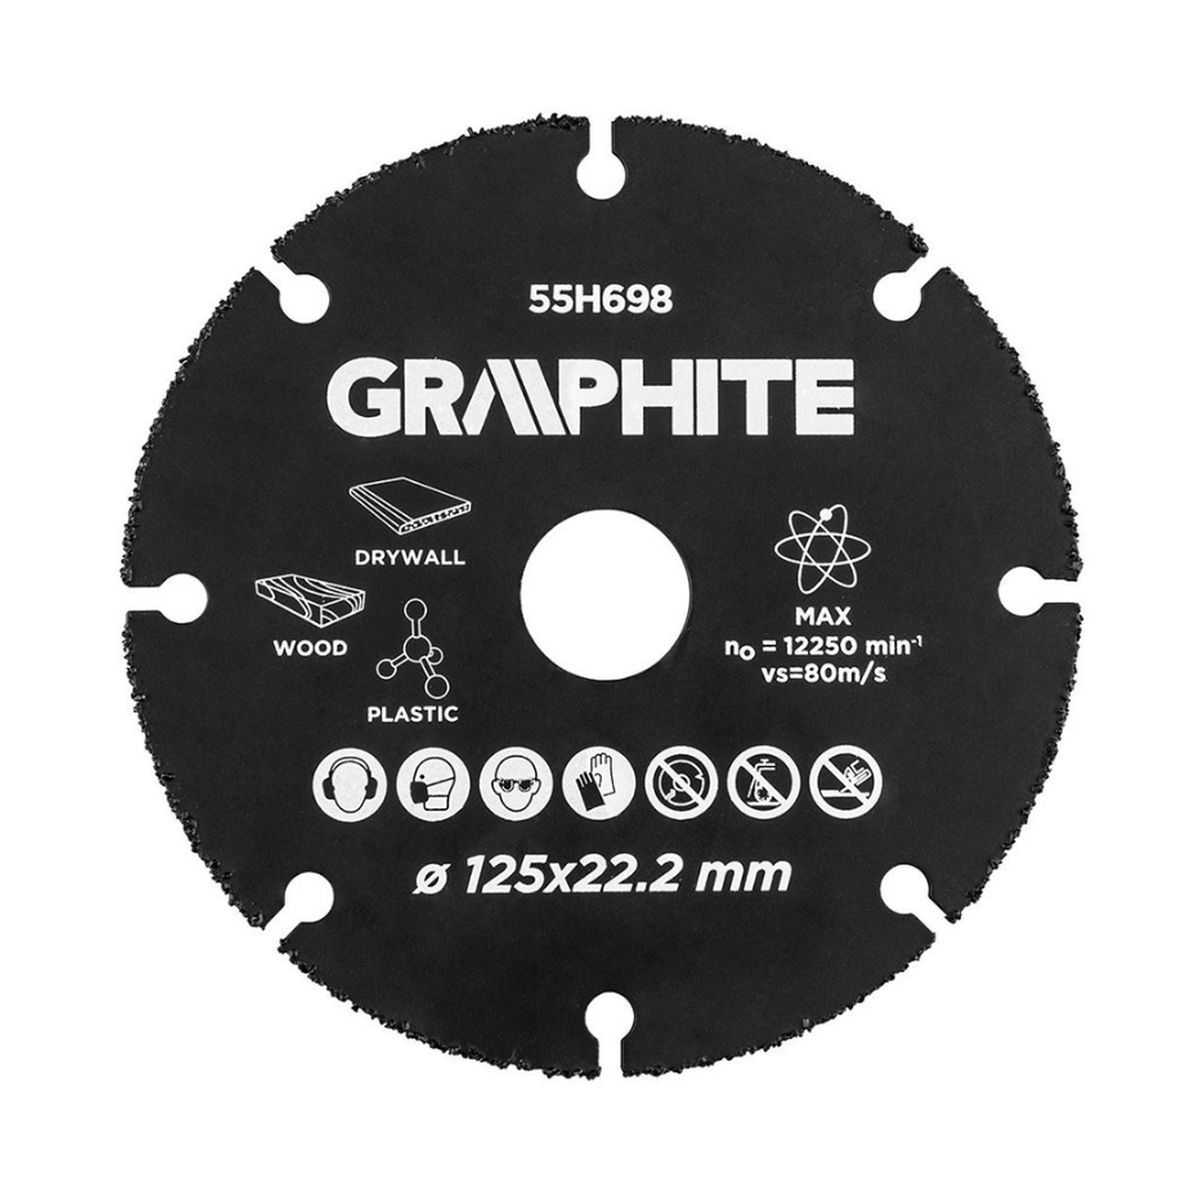 Δίσκος καρβιδίου Multi Material 125mm 55H698 GRAPHITE